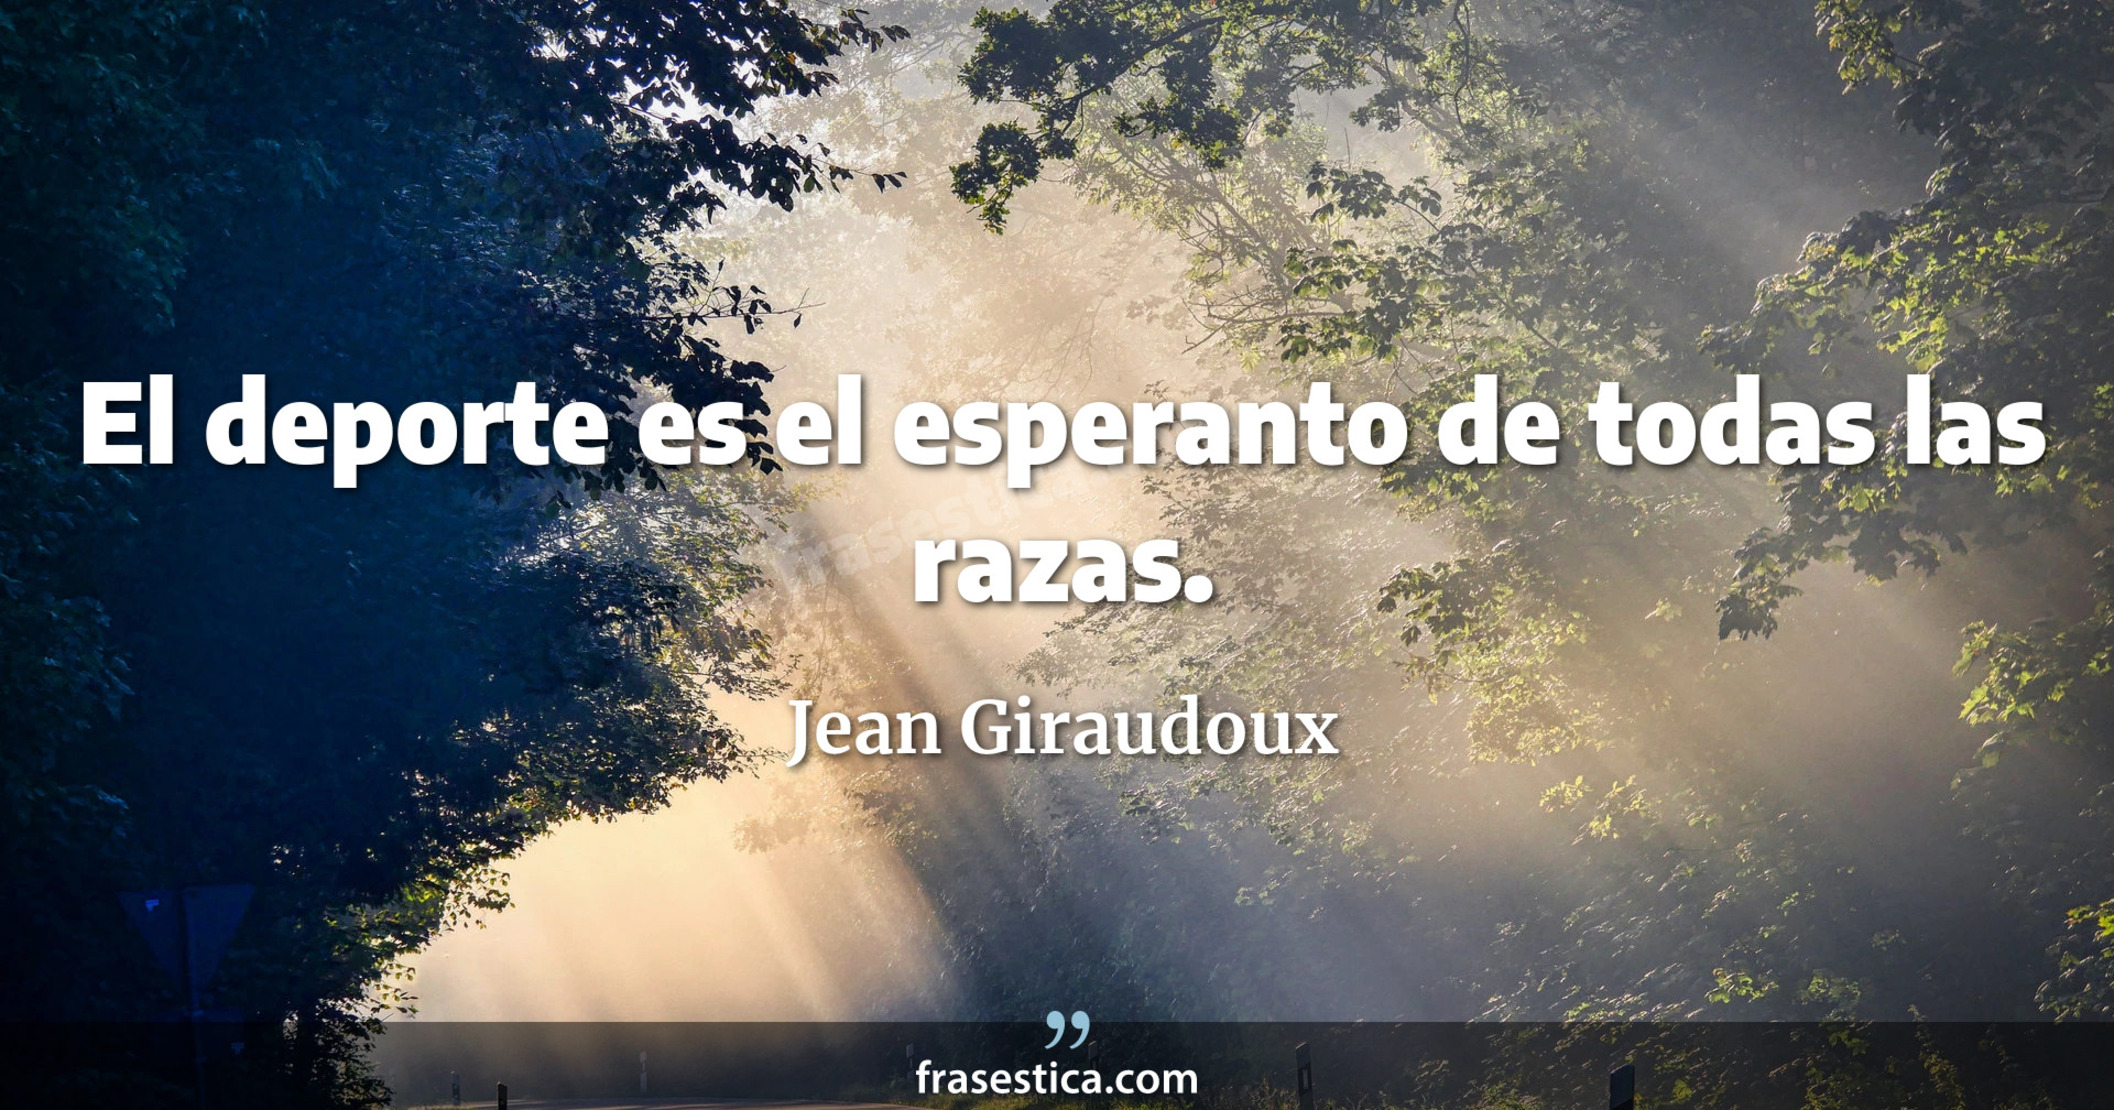 El deporte es el esperanto de todas las razas. - Jean Giraudoux